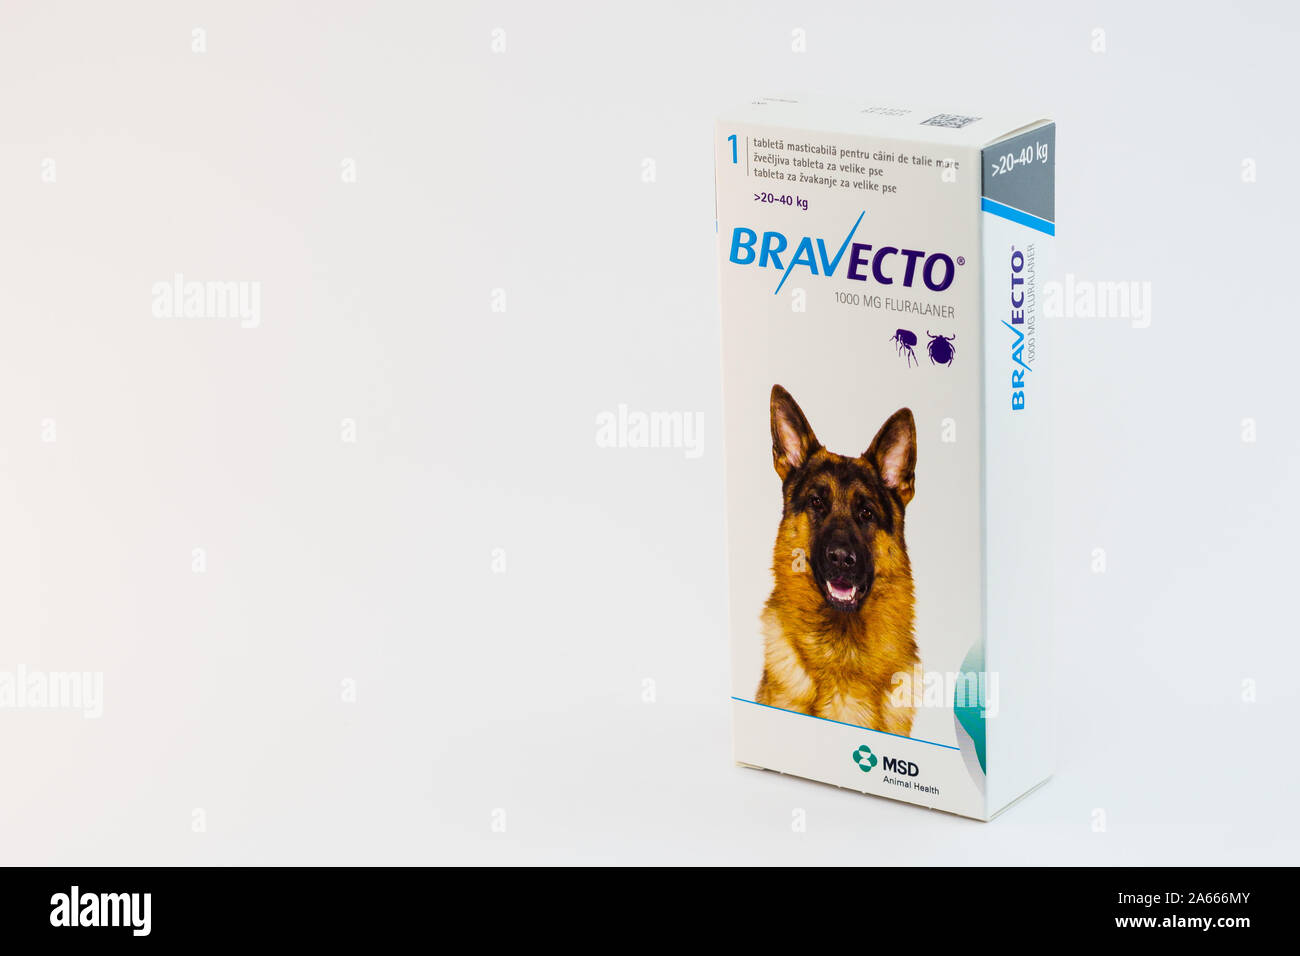 Cluj-Napoca/Romania-10 24 2019: Bravecto Tick masticabili & Flea Tablet Foto Stock